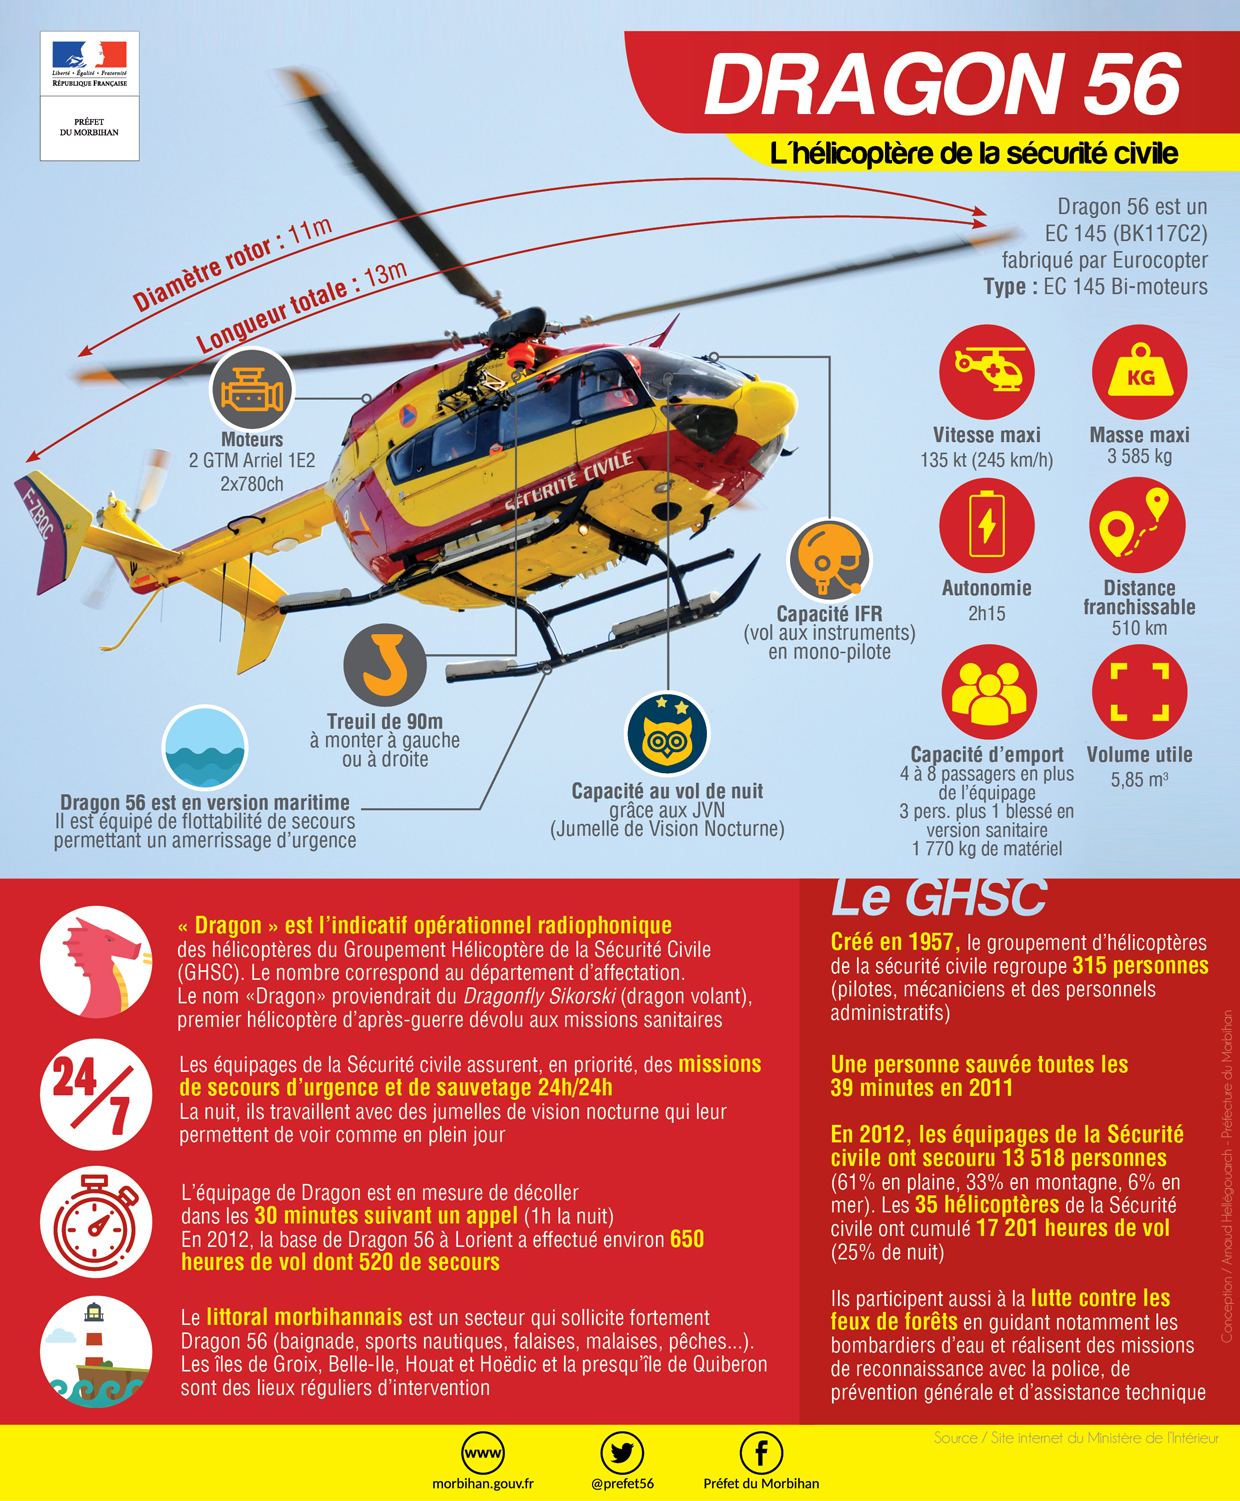 Hélicoptère de sauvetage - 3845-A